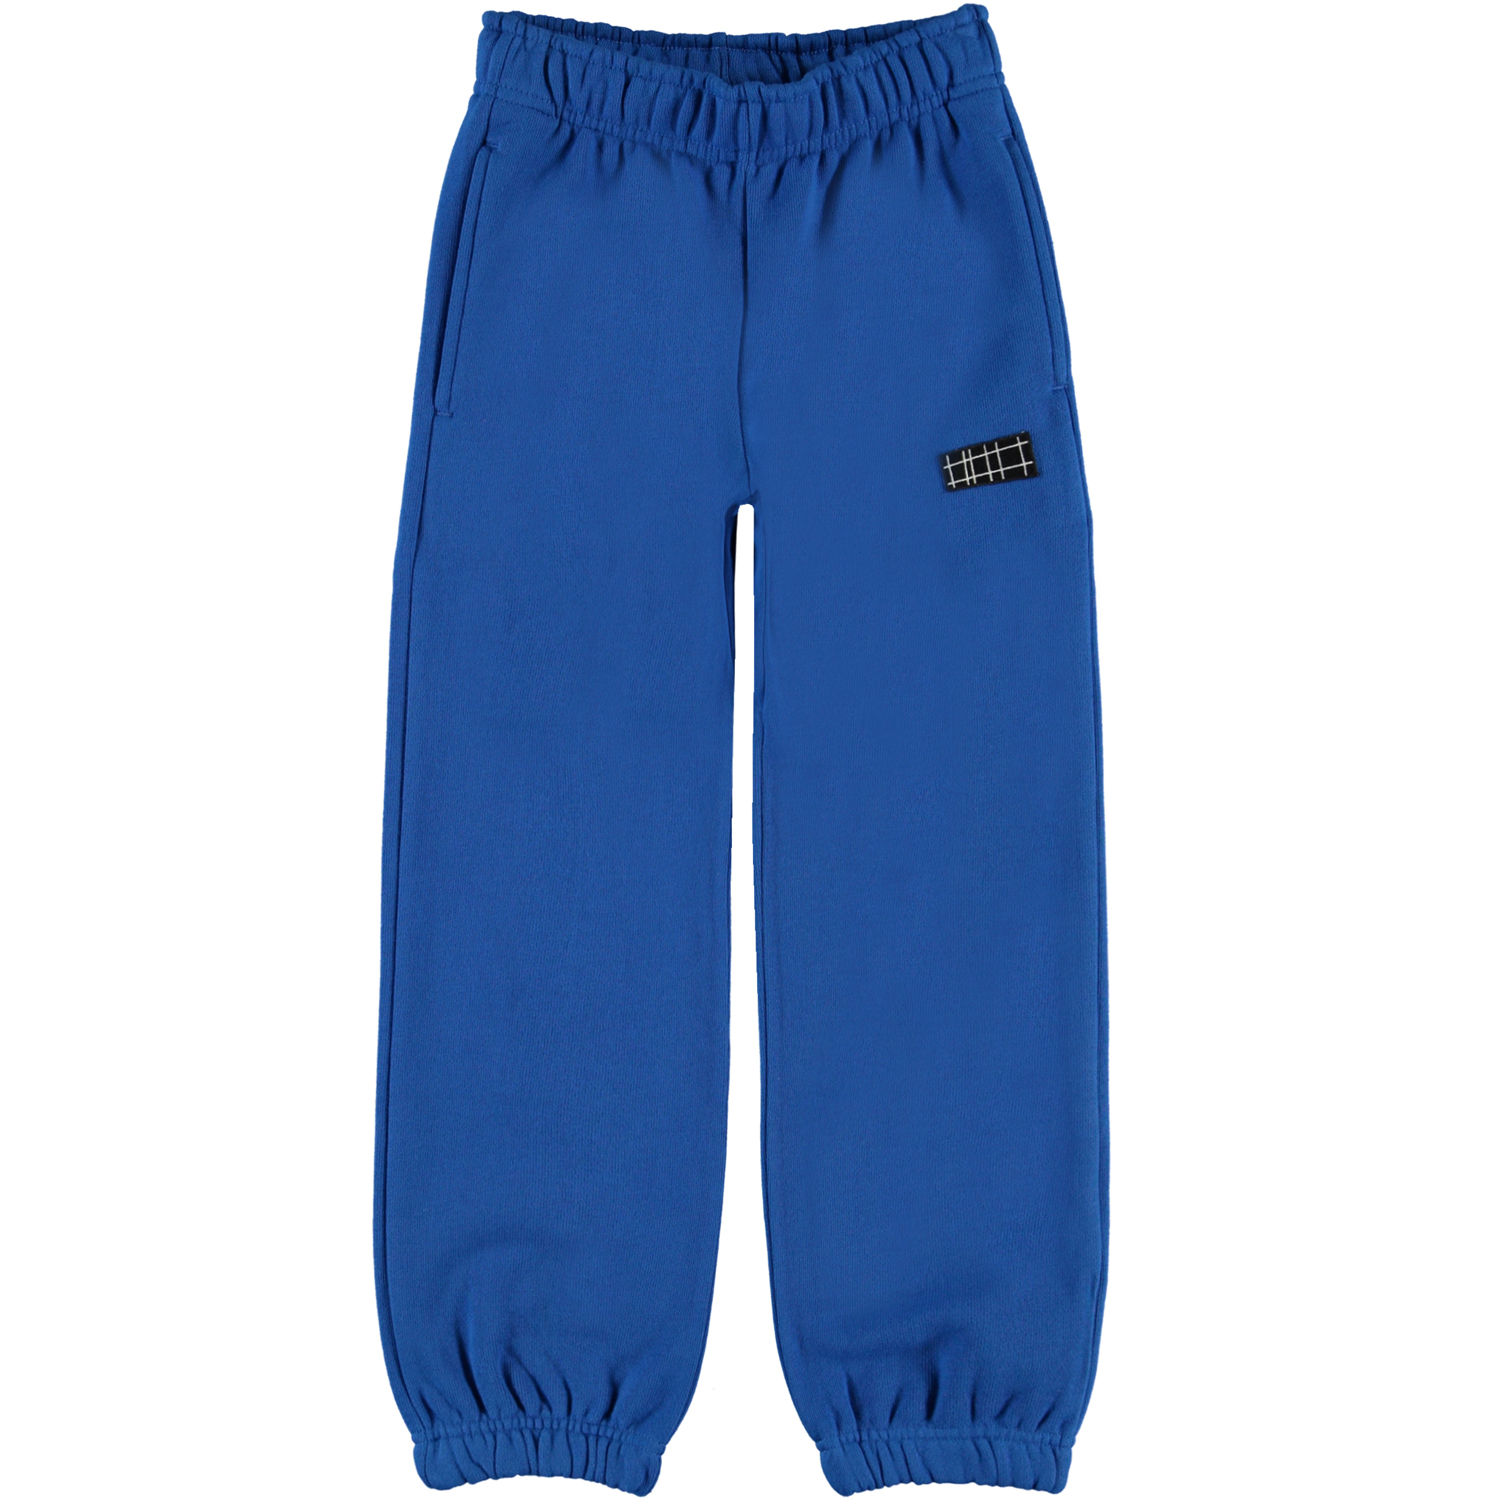 Ams Sweatpants, Royal Blue, 128 cm